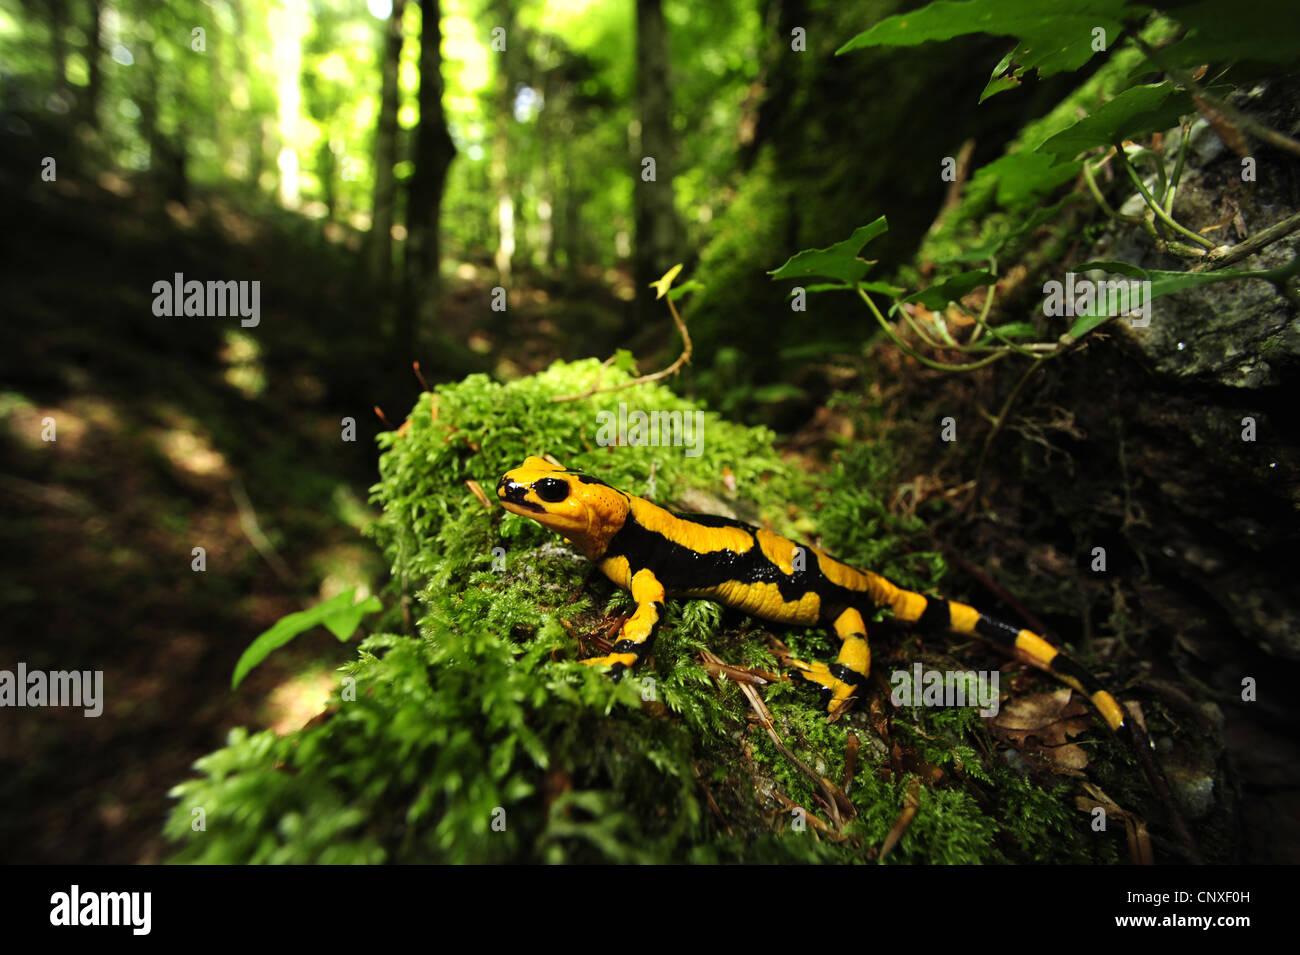 European fire salamander (Salamandra salamandra, Salamandra salamandra gigliolii  ), sitting on moss, Italy, Calabria Stock Photo